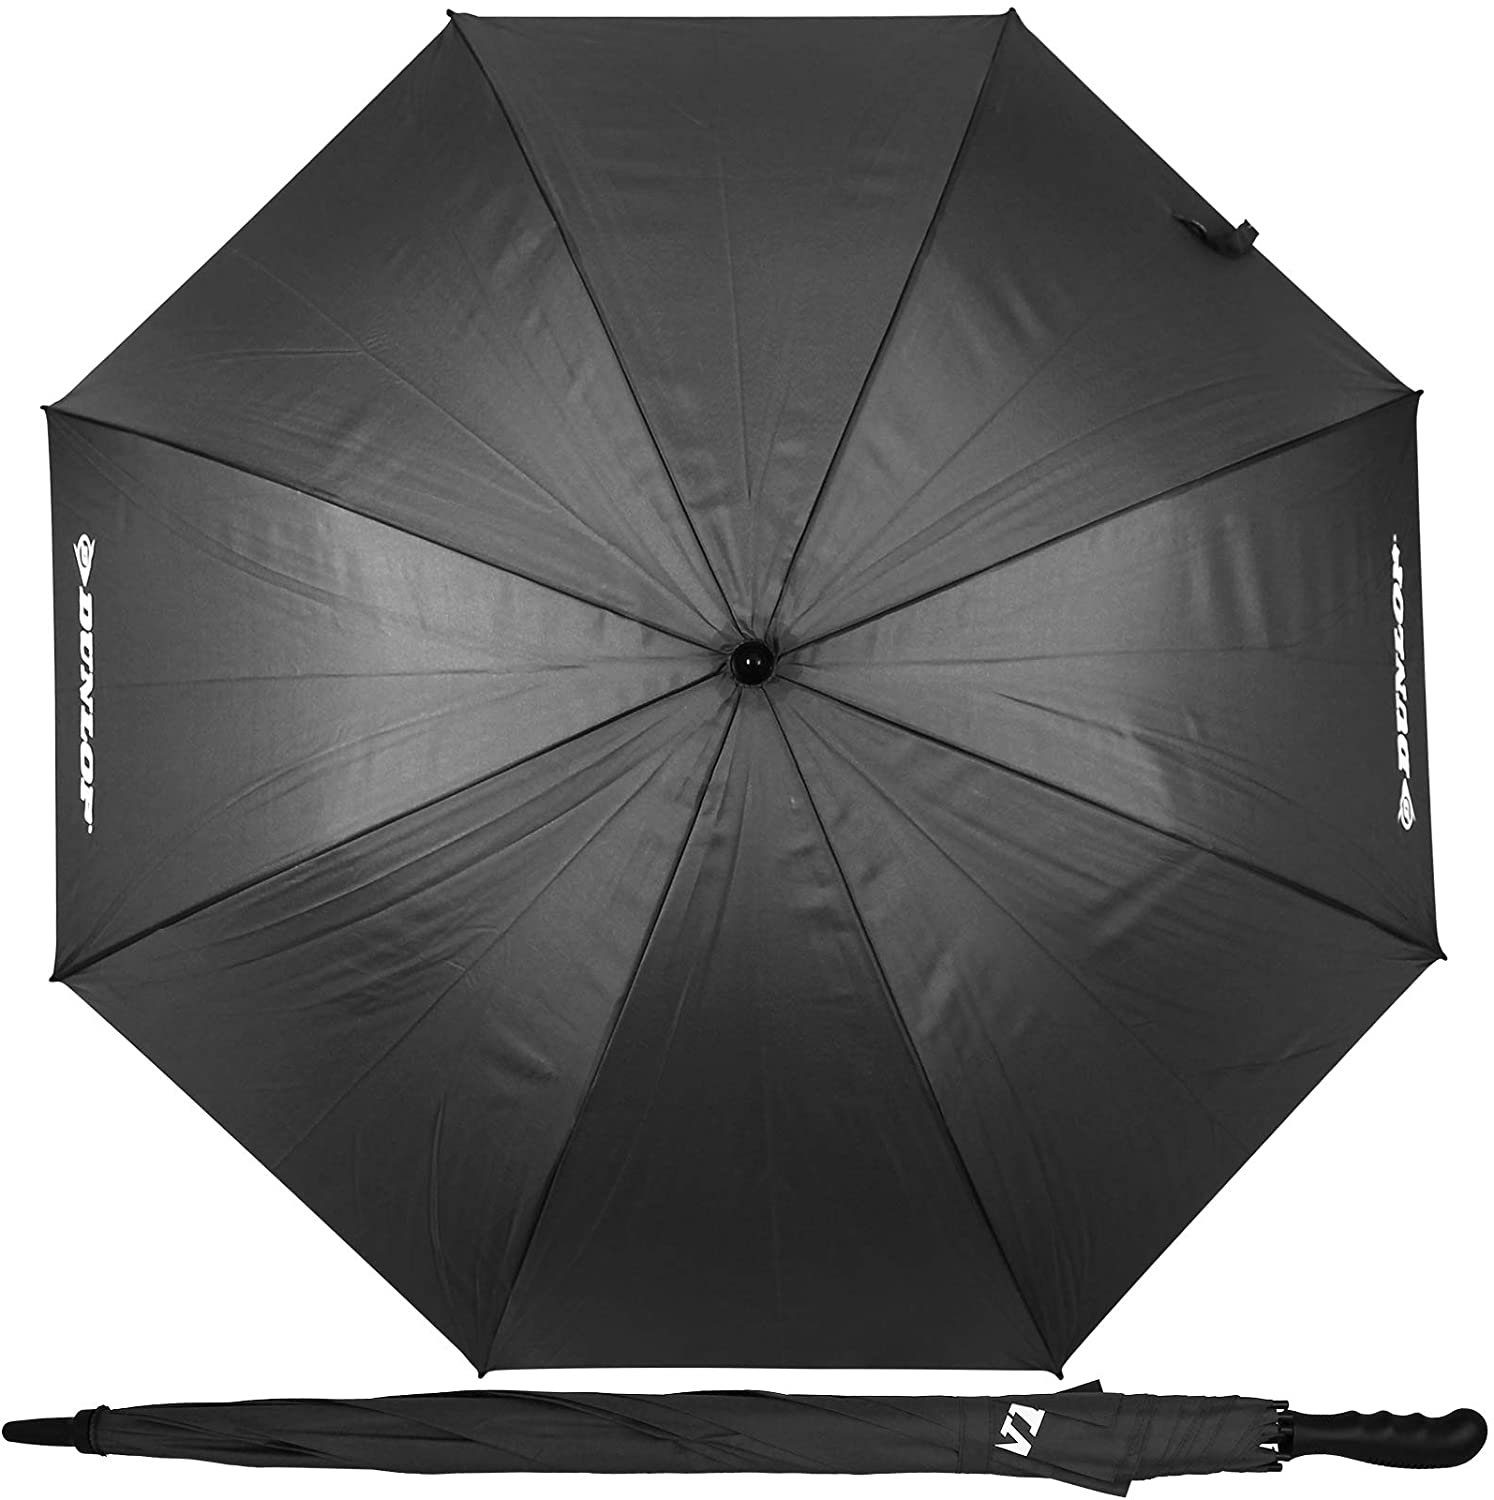 Farbwahl mit Personen XXL Paar schwarz 2 Dunlop Dokado Partnerschirm Partnerschirm 130cm für Doppelregenschirm Stockschirm Familienschirm Regenschirm